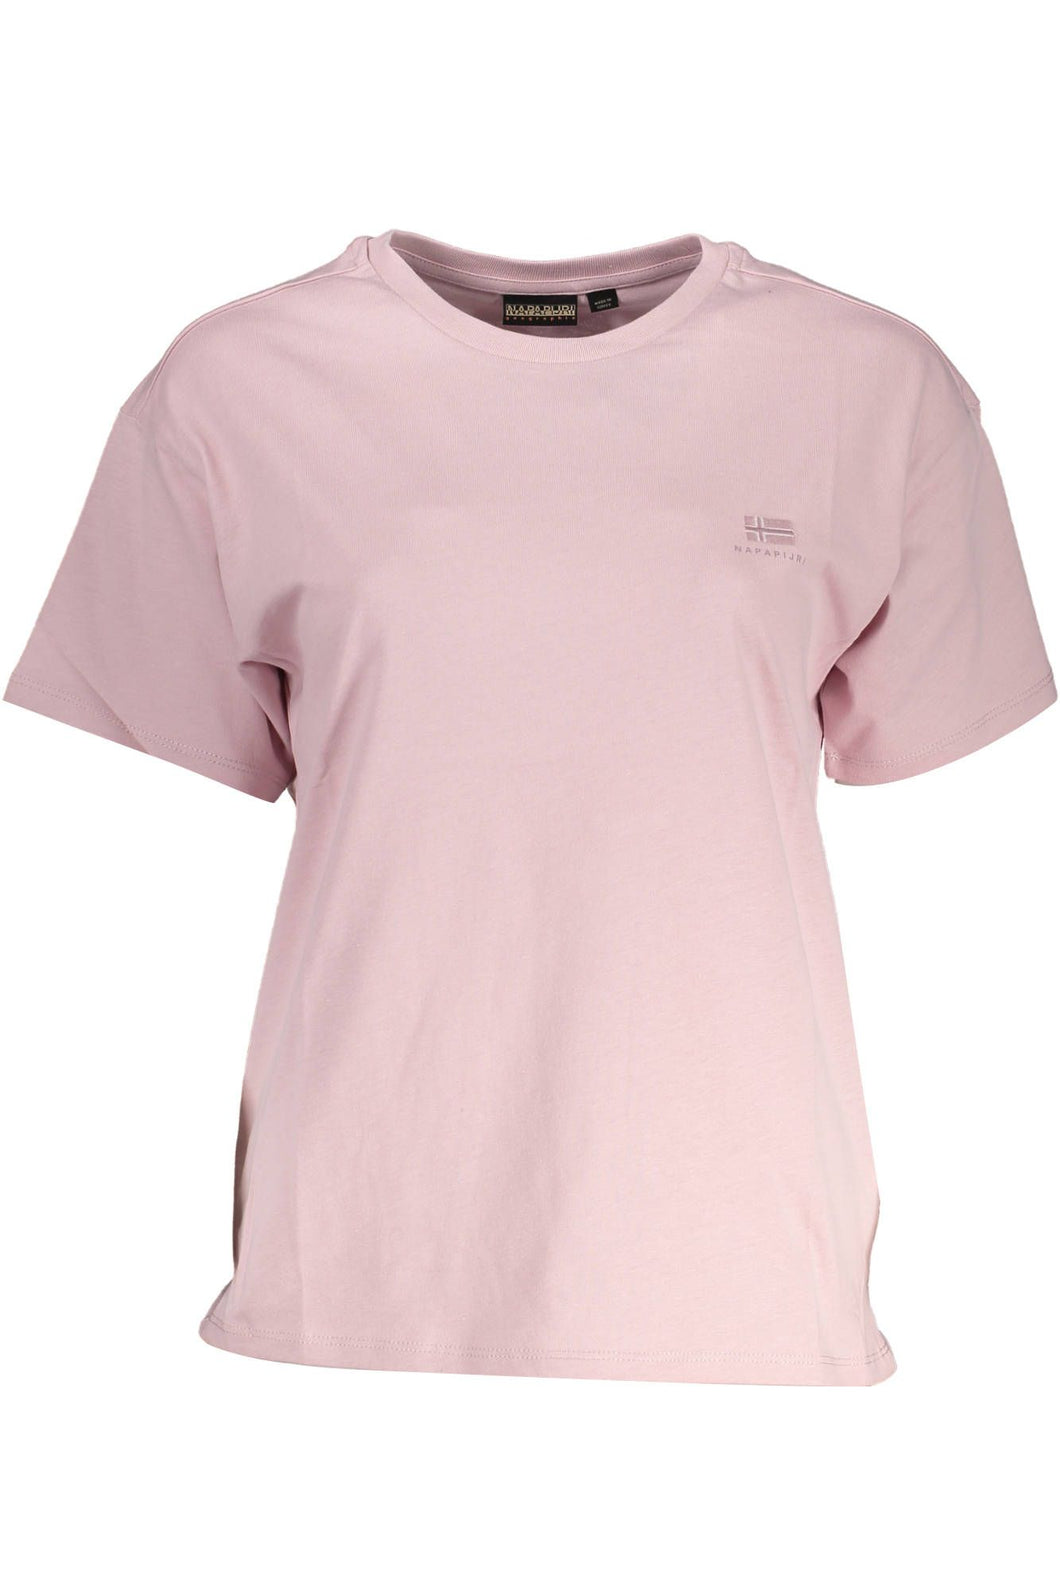 Napapijri Pink Cotton Tops & T-Shirt